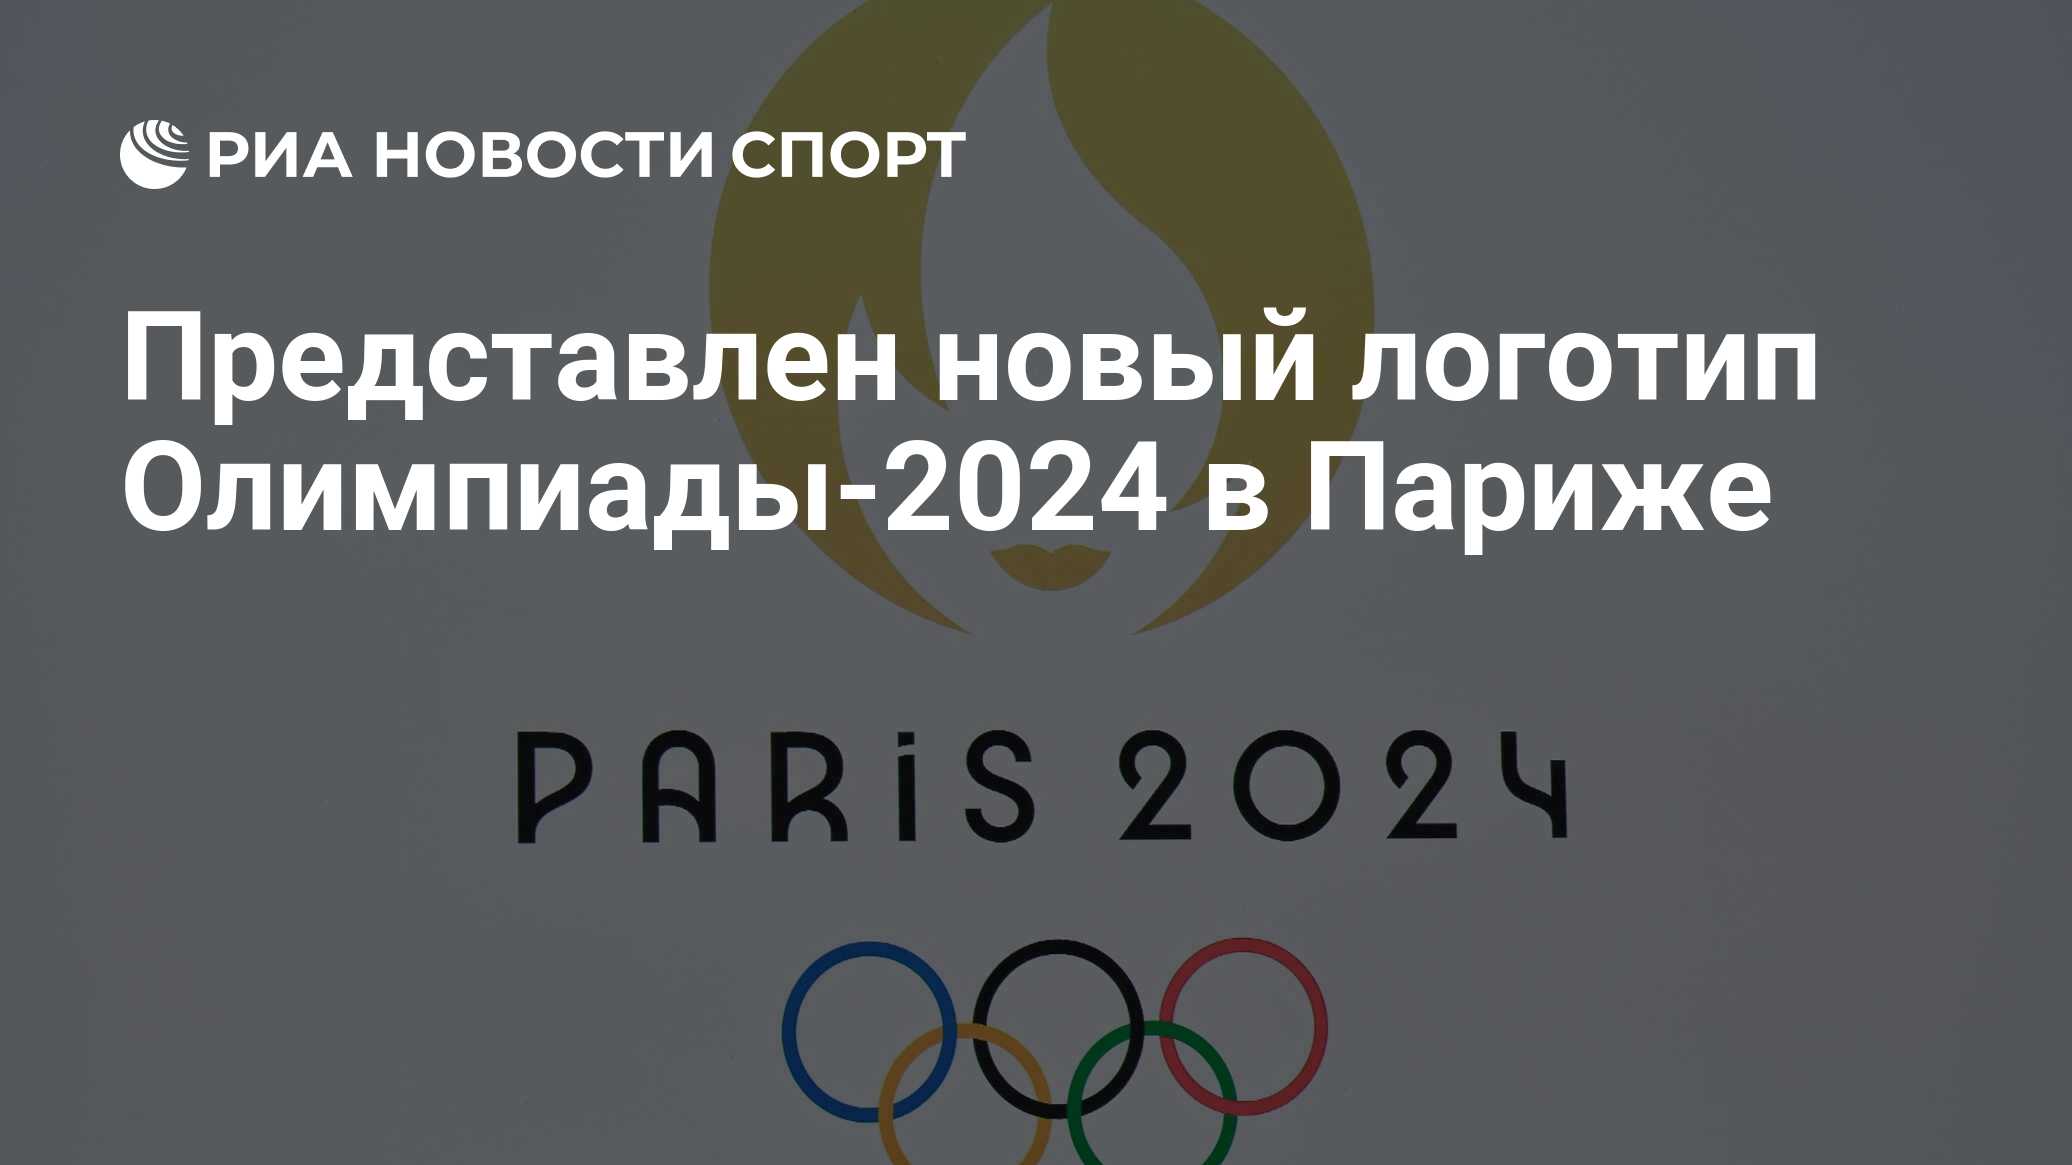 Вшэ результаты олимпиады 2024